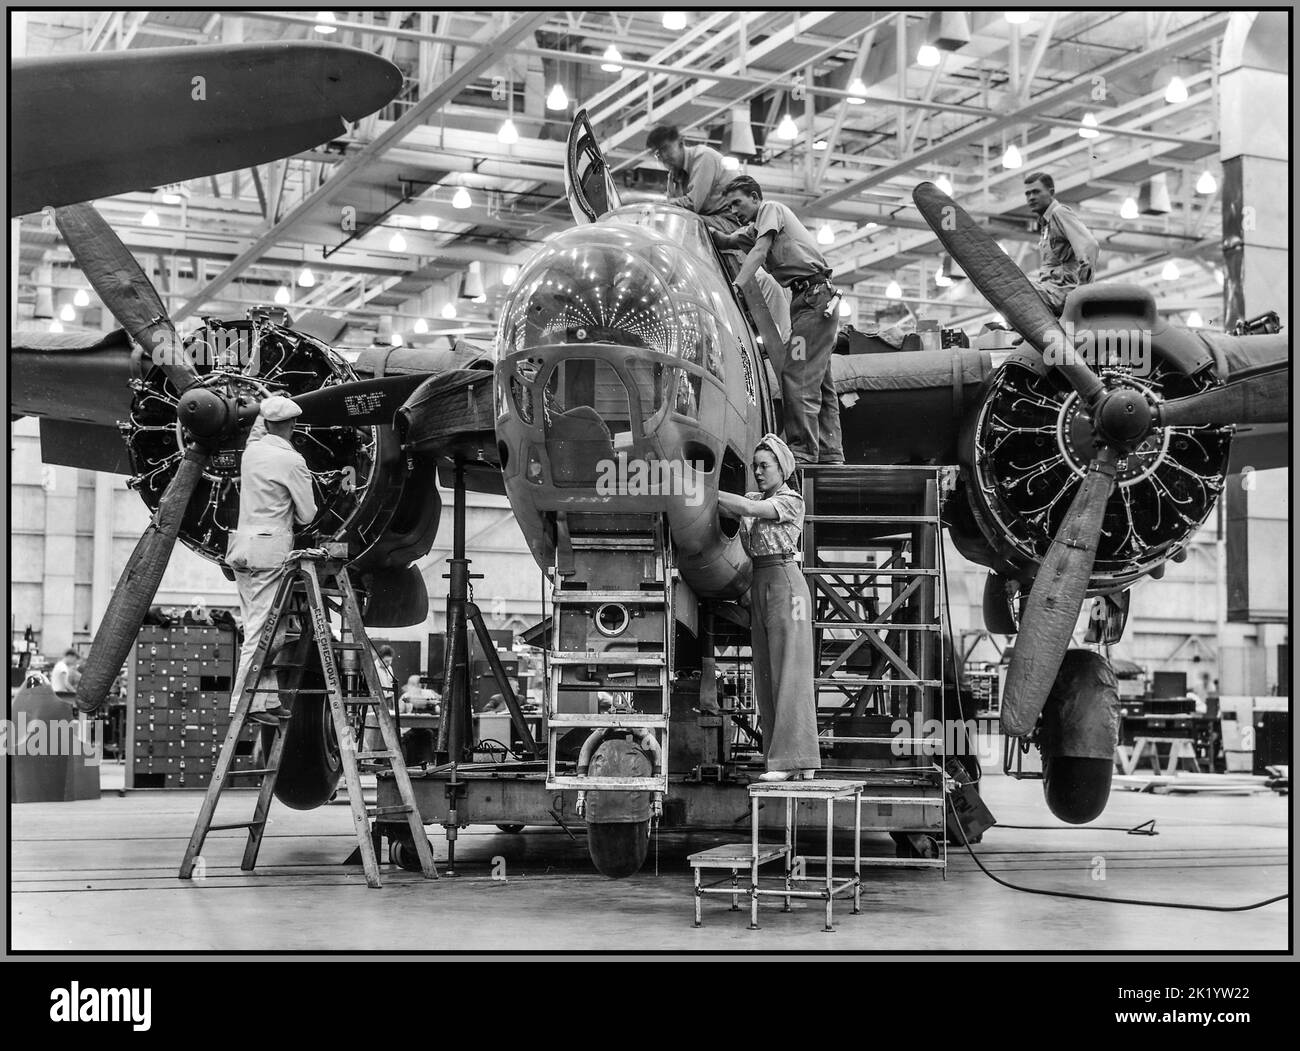 WW2 Bomberflugzeugproduktion USA erfahrene Fließband-Arbeiter beiderlei Geschlechts tragen zur Kriegsarbeit bei Produktion Von A-20-Angriffsbombern im Douglas-Flugzeugwerk in Long Beach, Kalifornien, USA Datum ca. Oktober 1942 Stockfoto